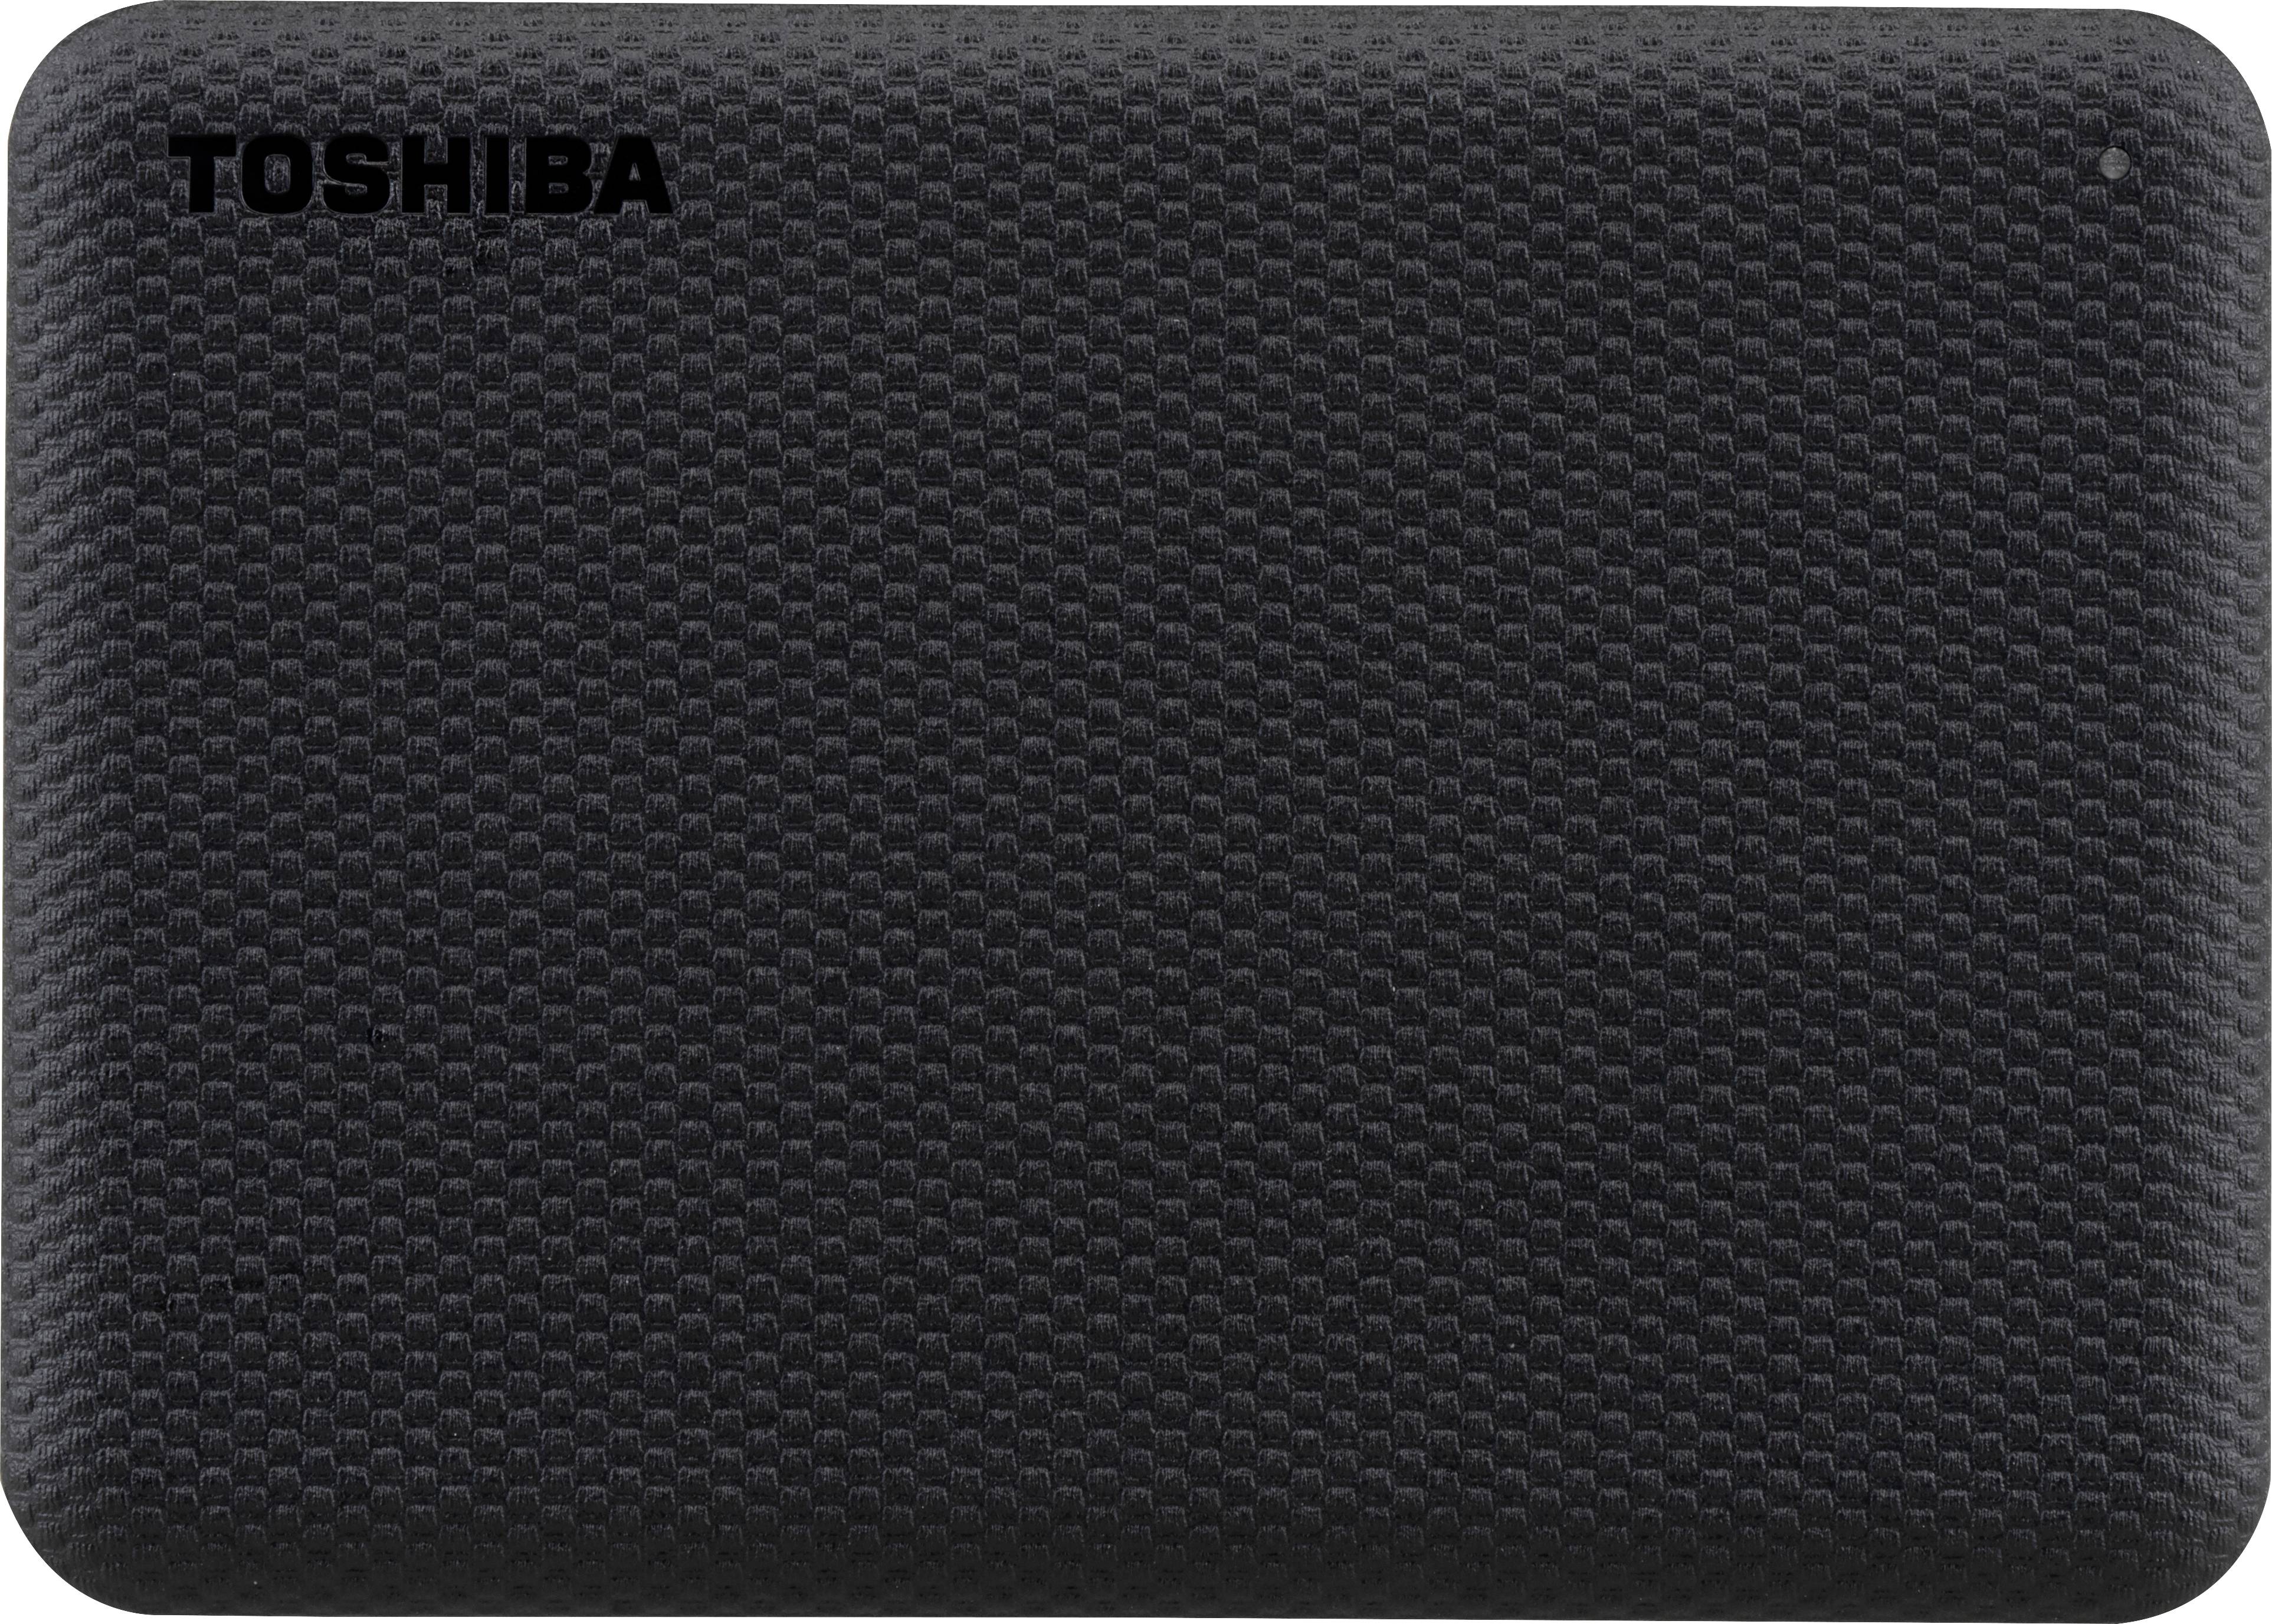 TOSHIBA Canvio Advance 4TB